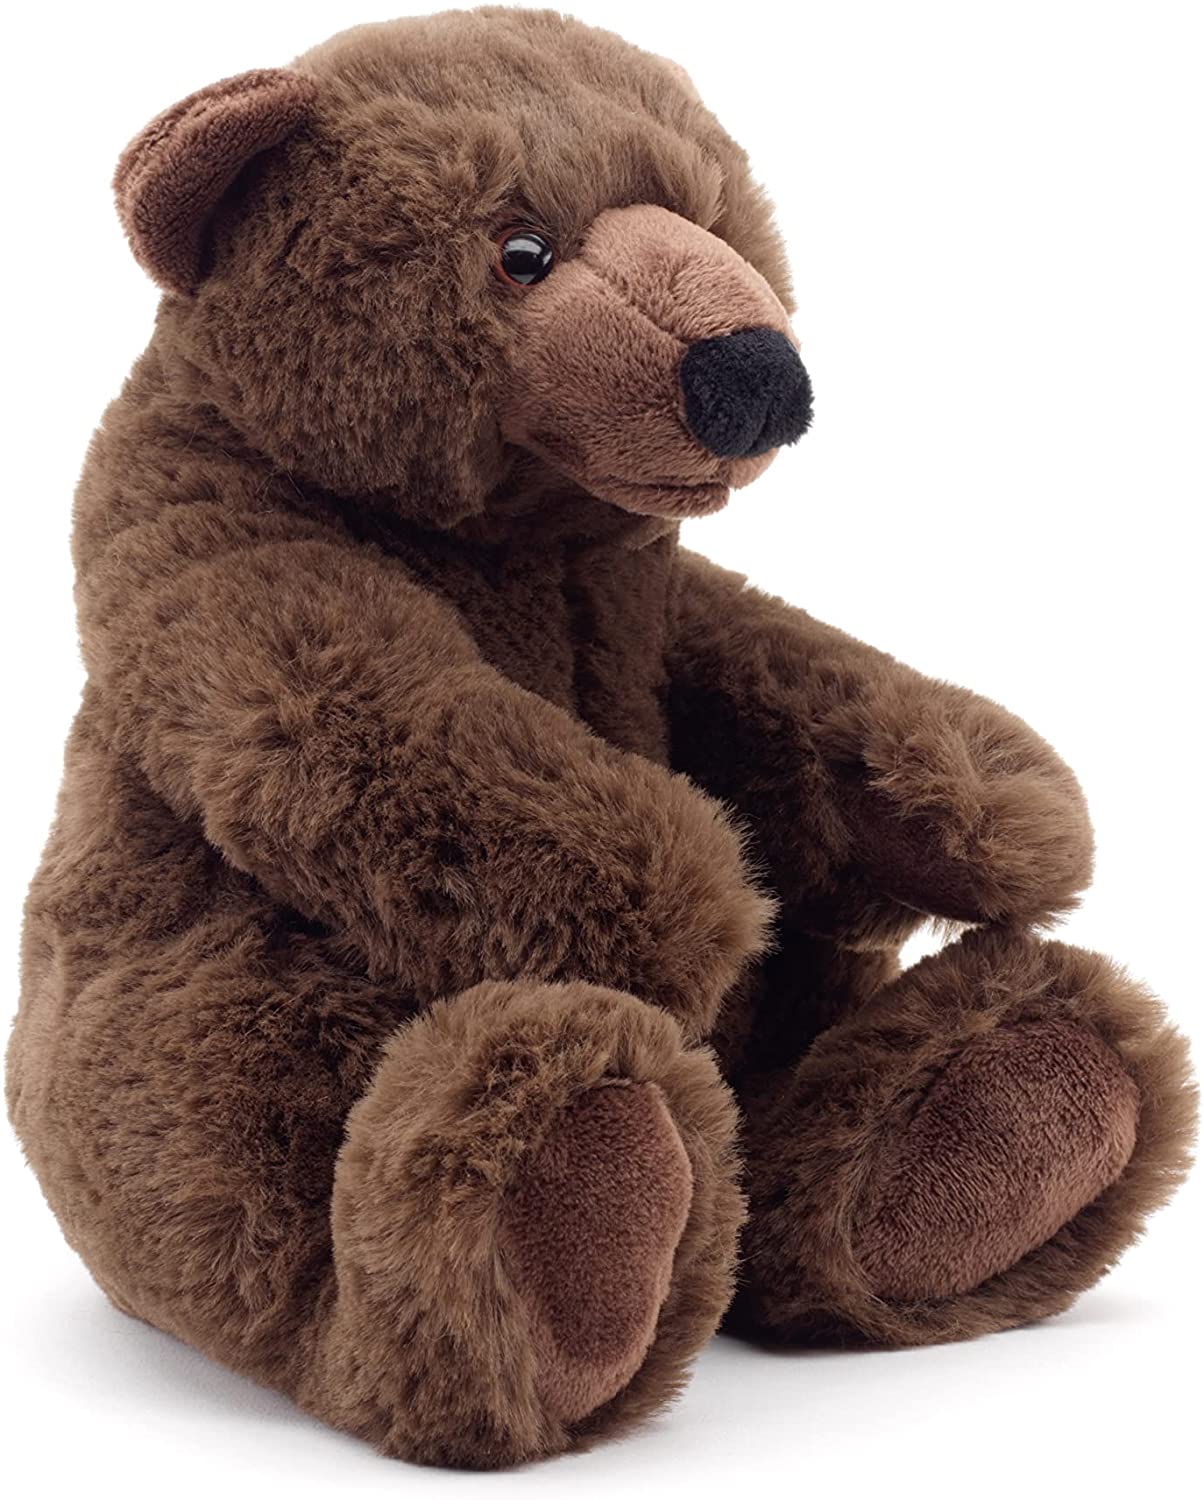 Uni-Toys - Braunbär klein, sitzend - 'Charlie' - superweich - 20 cm (Höhe) - Plüsch-Bär, Teddy, Teddybär - Plüschtier, Kuscheltier 